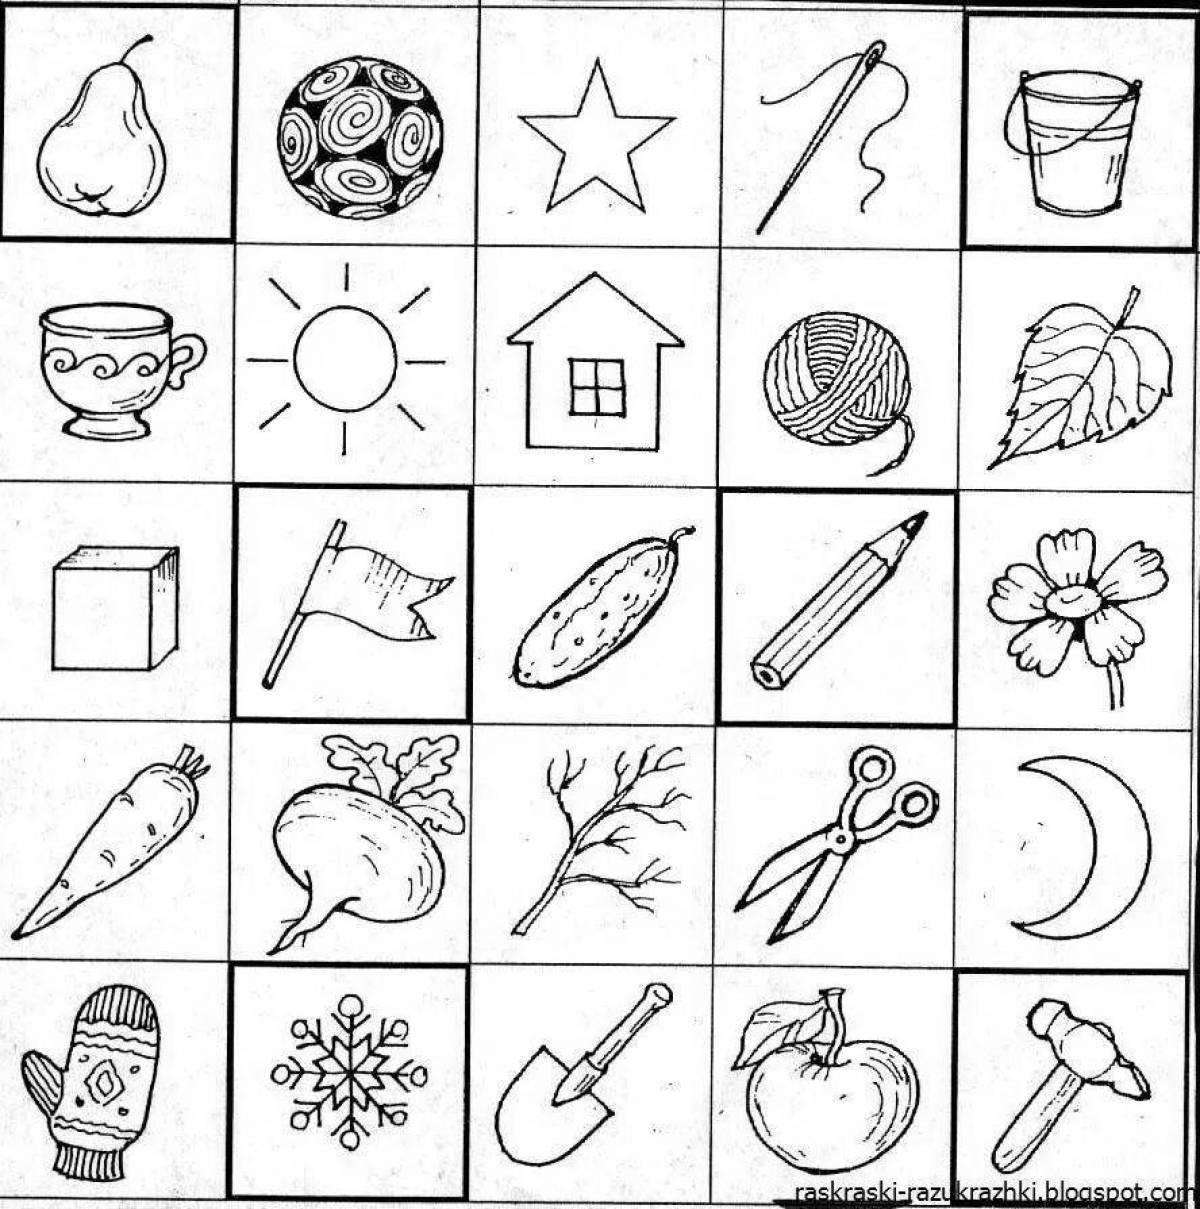 Печатать в памяти. Карточки "для дошкольников". Рисунки для запоминания. Упражнение на запоминание предметов. Зрительная память для дошкольников.